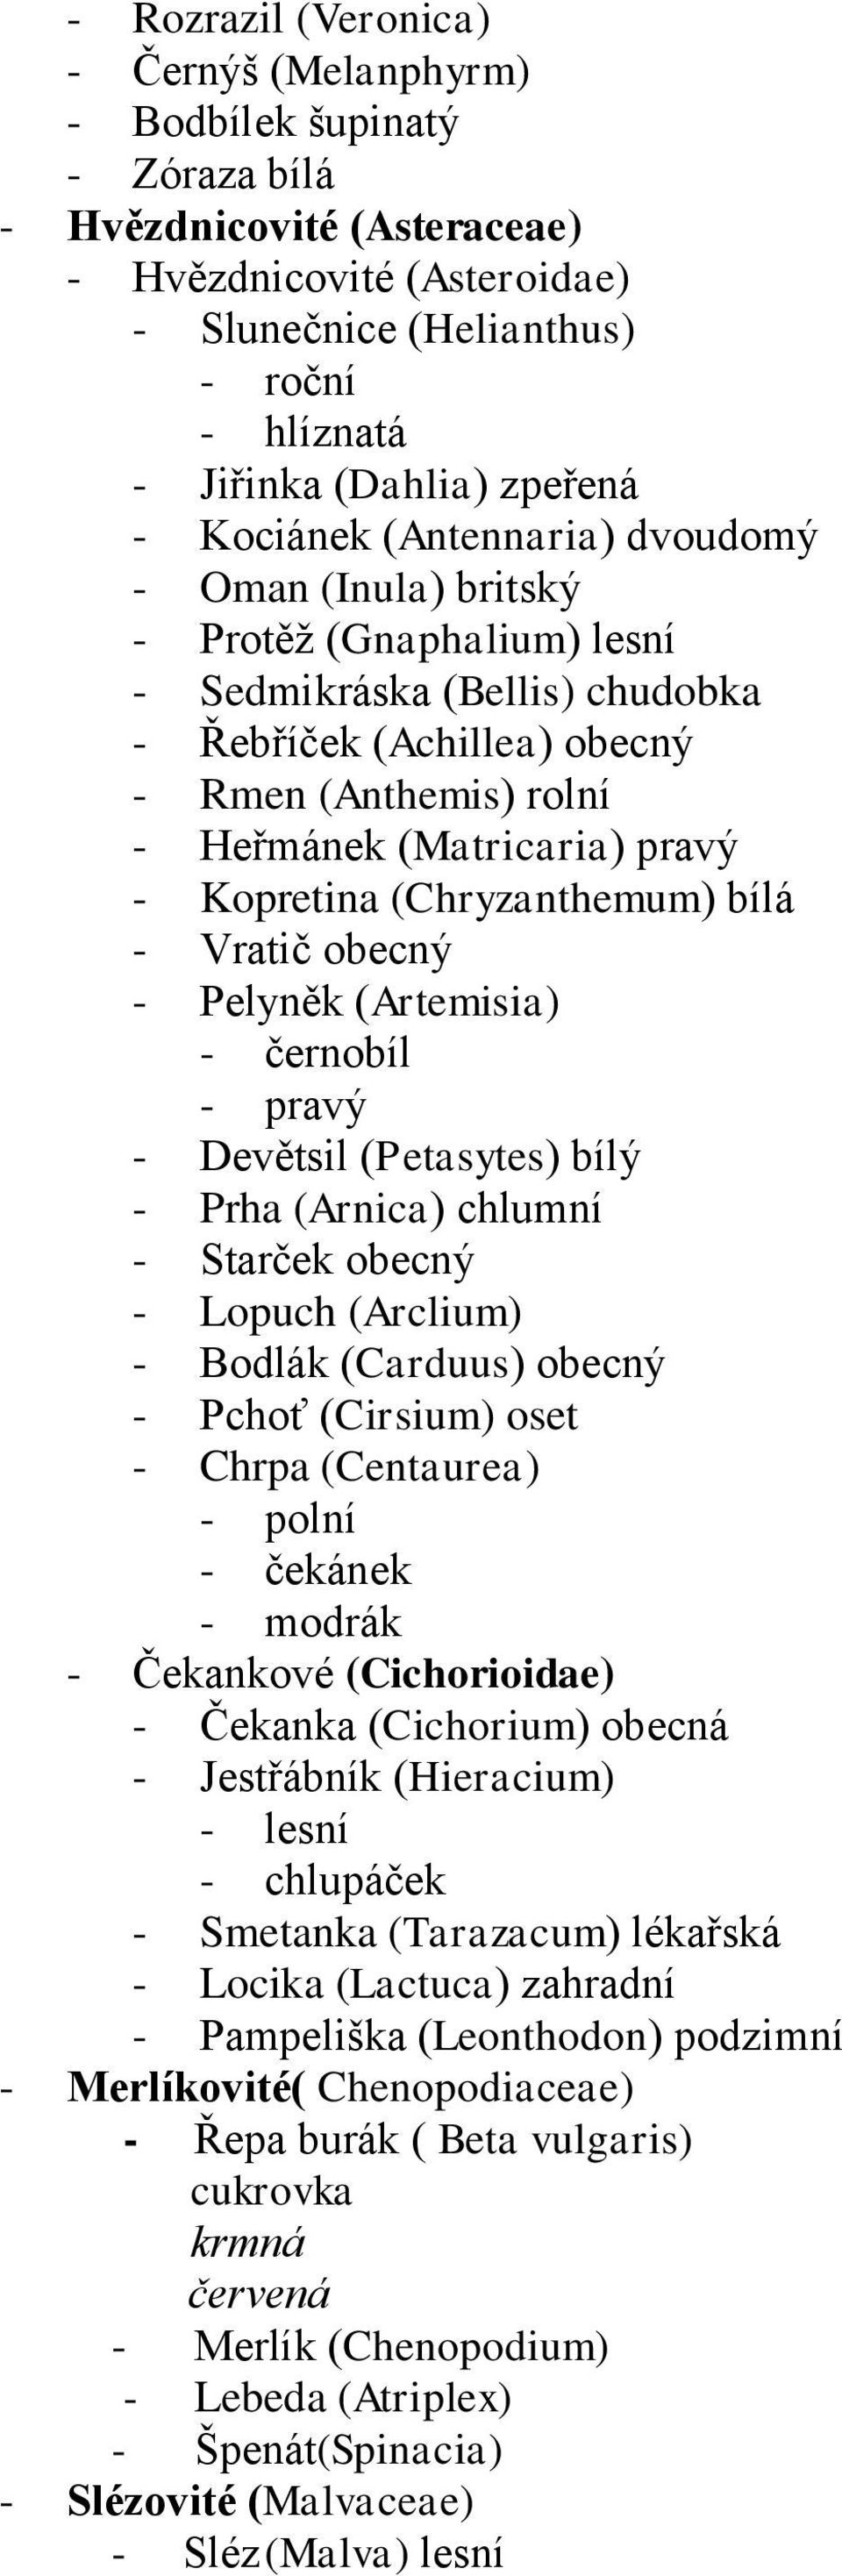 (Matricaria) pravý - Kopretina (Chryzanthemum) bílá - Vratič obecný - Pelyněk (Artemisia) - černobíl - pravý - Devětsil (Petasytes) bílý - Prha (Arnica) chlumní - Starček obecný - Lopuch (Arclium) -